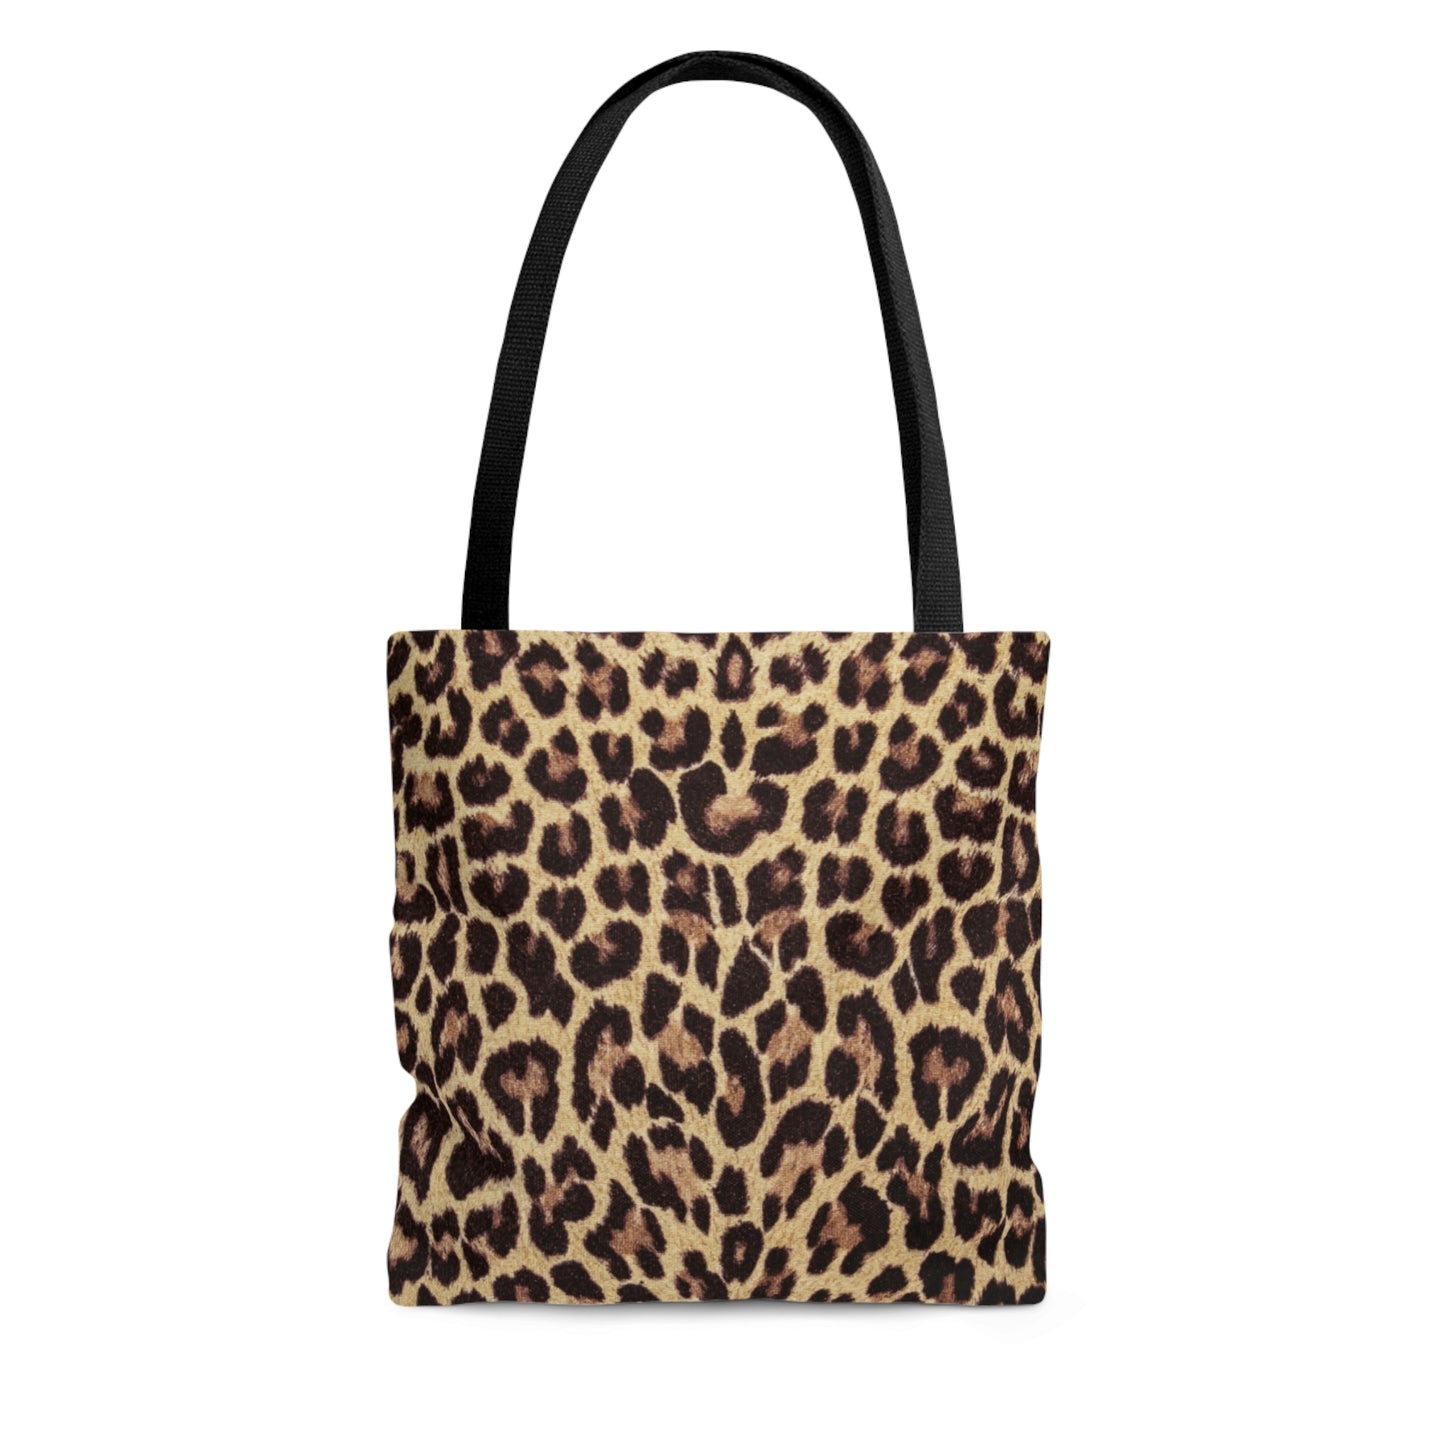 Leopard Print Tote Bag / Leopard Print Bag